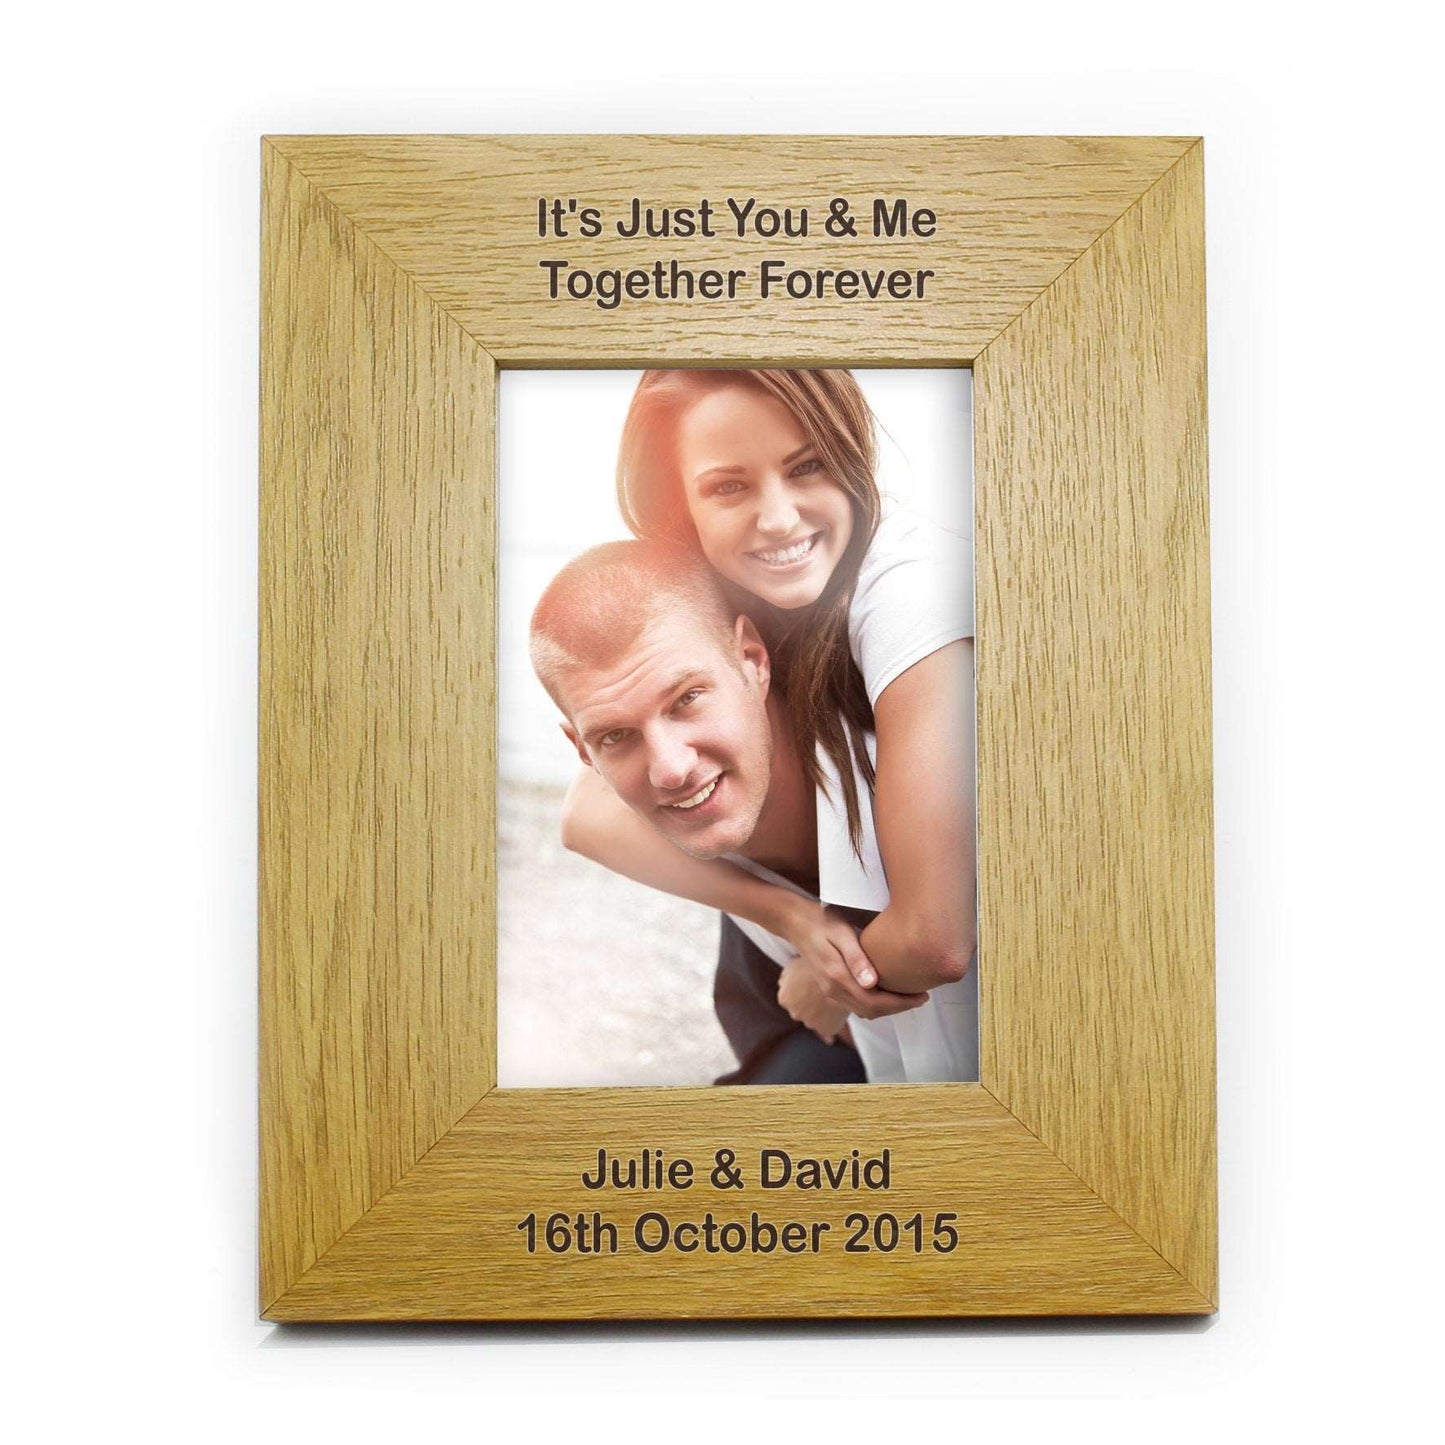 Personalised message 4x6 Oak Veneer Photo Frame  By Sweetlea Gifts